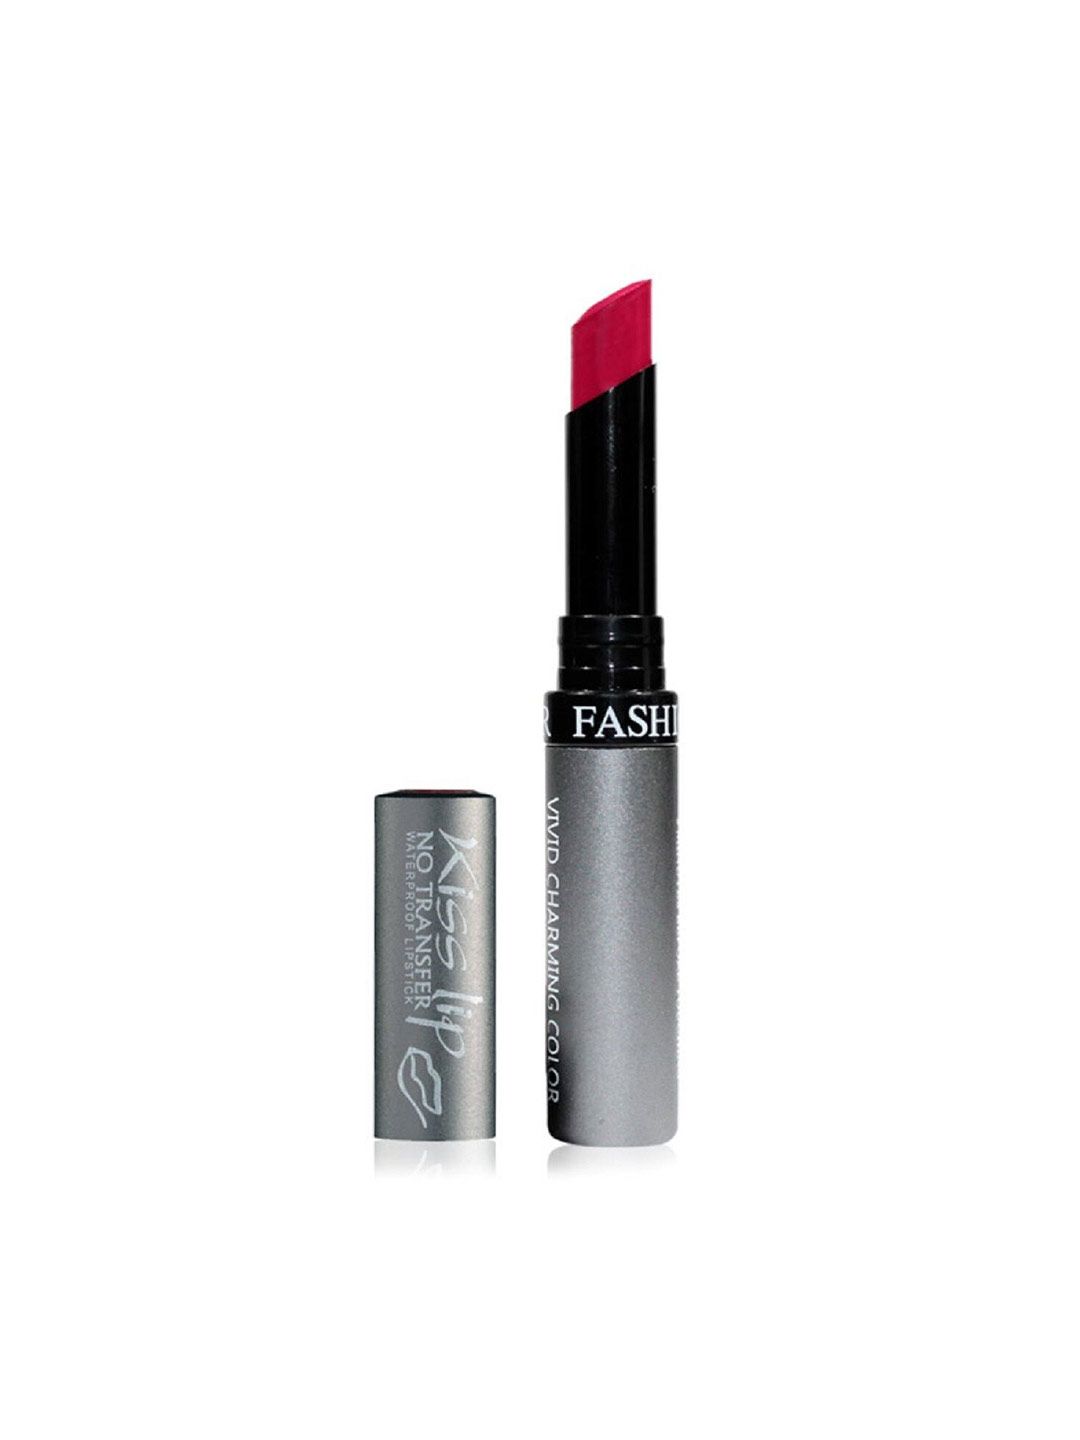 Fashion Colour Kiss Lip Vivid Charming Color No Transfer Lipstick - Rose Carmine 34 Price in India